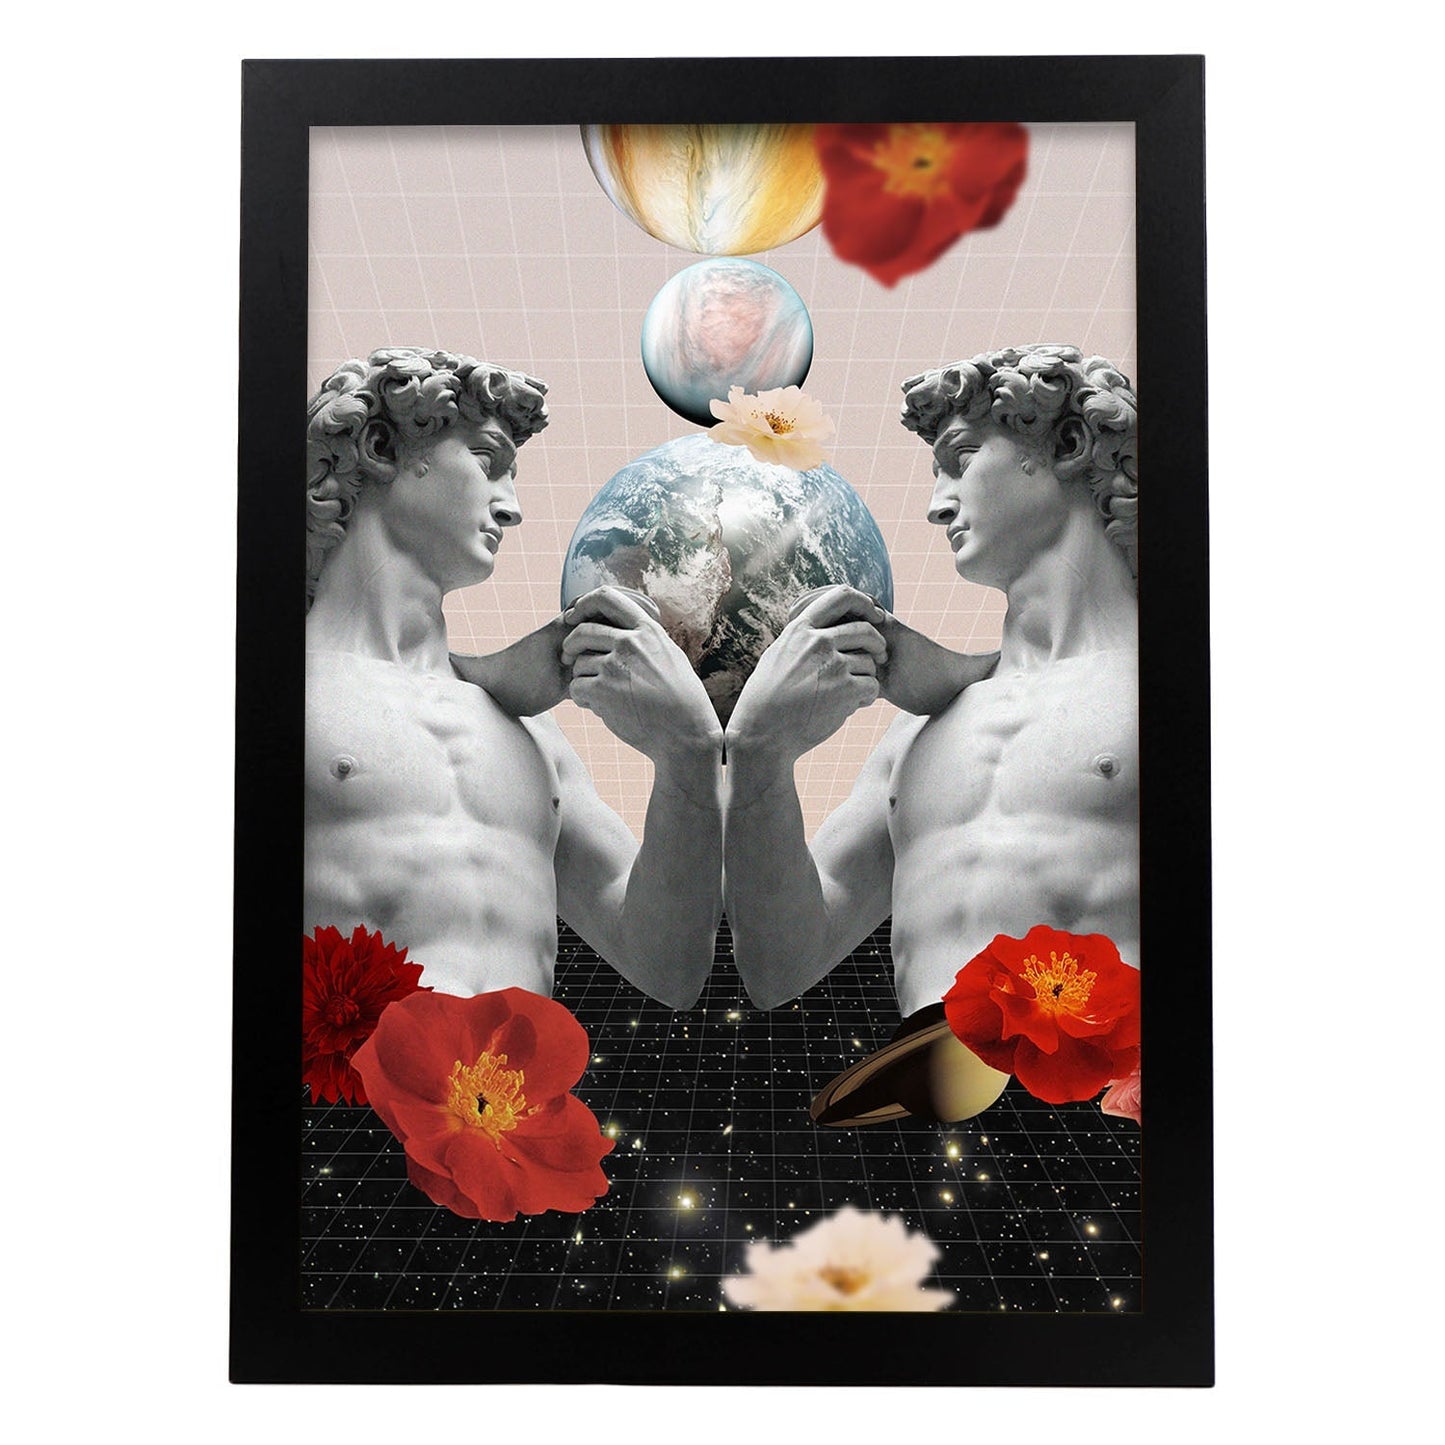 Lamina artistica decorativa con ilustración de Collage surrealista 50 estilo Collage-Artwork-Nacnic-A3-Marco Negro-Nacnic Estudio SL